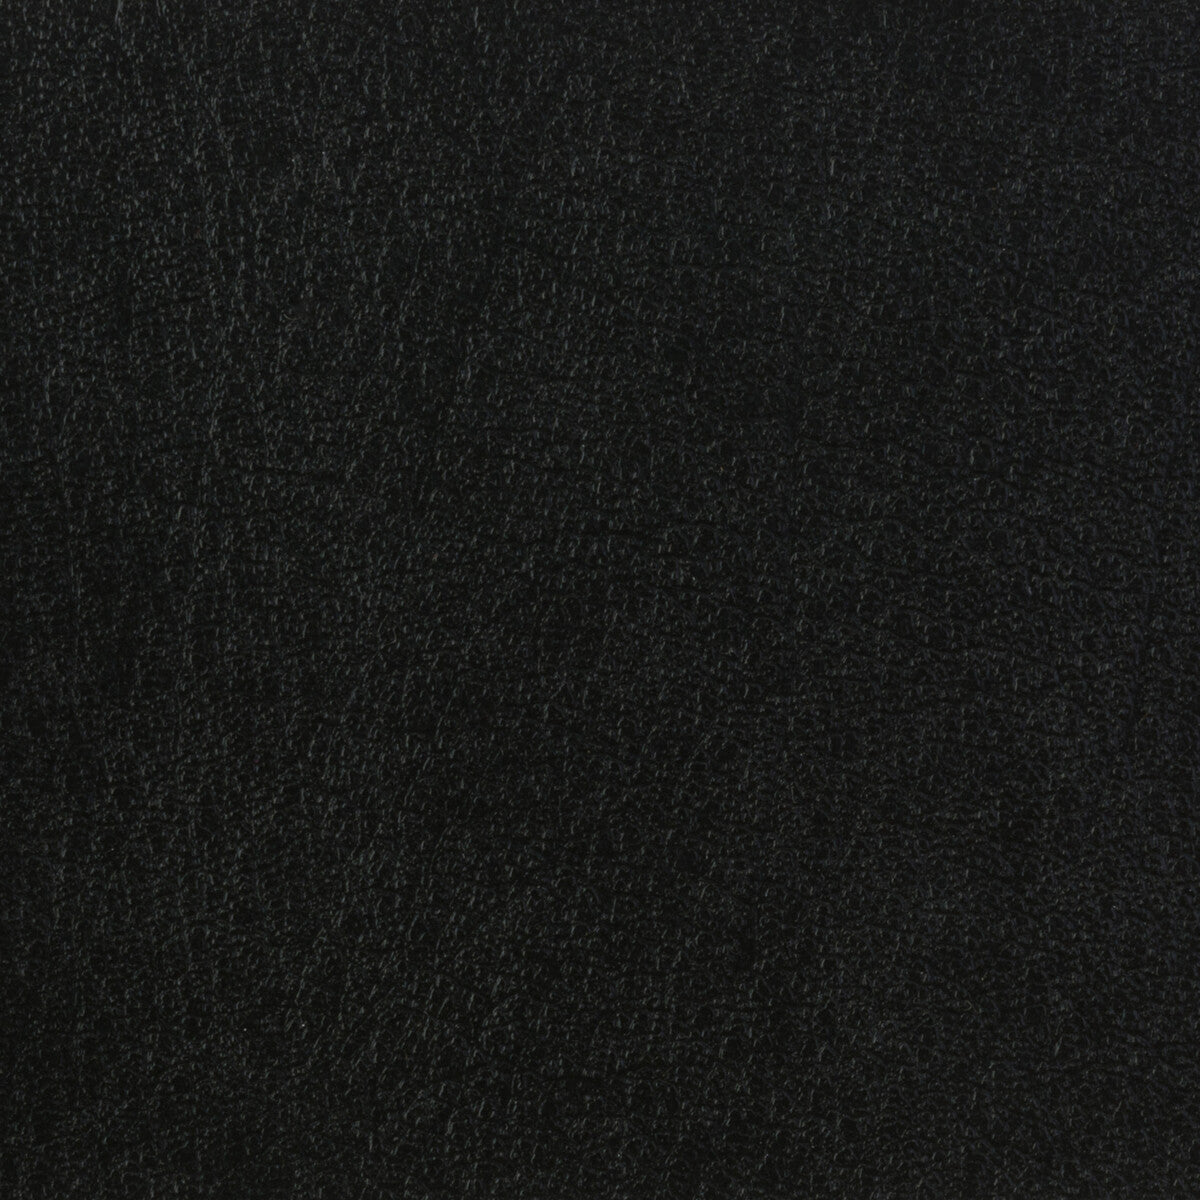 Kravet Basics fabric in celine-8 color - pattern CELINE.8.0 - by Kravet Basics